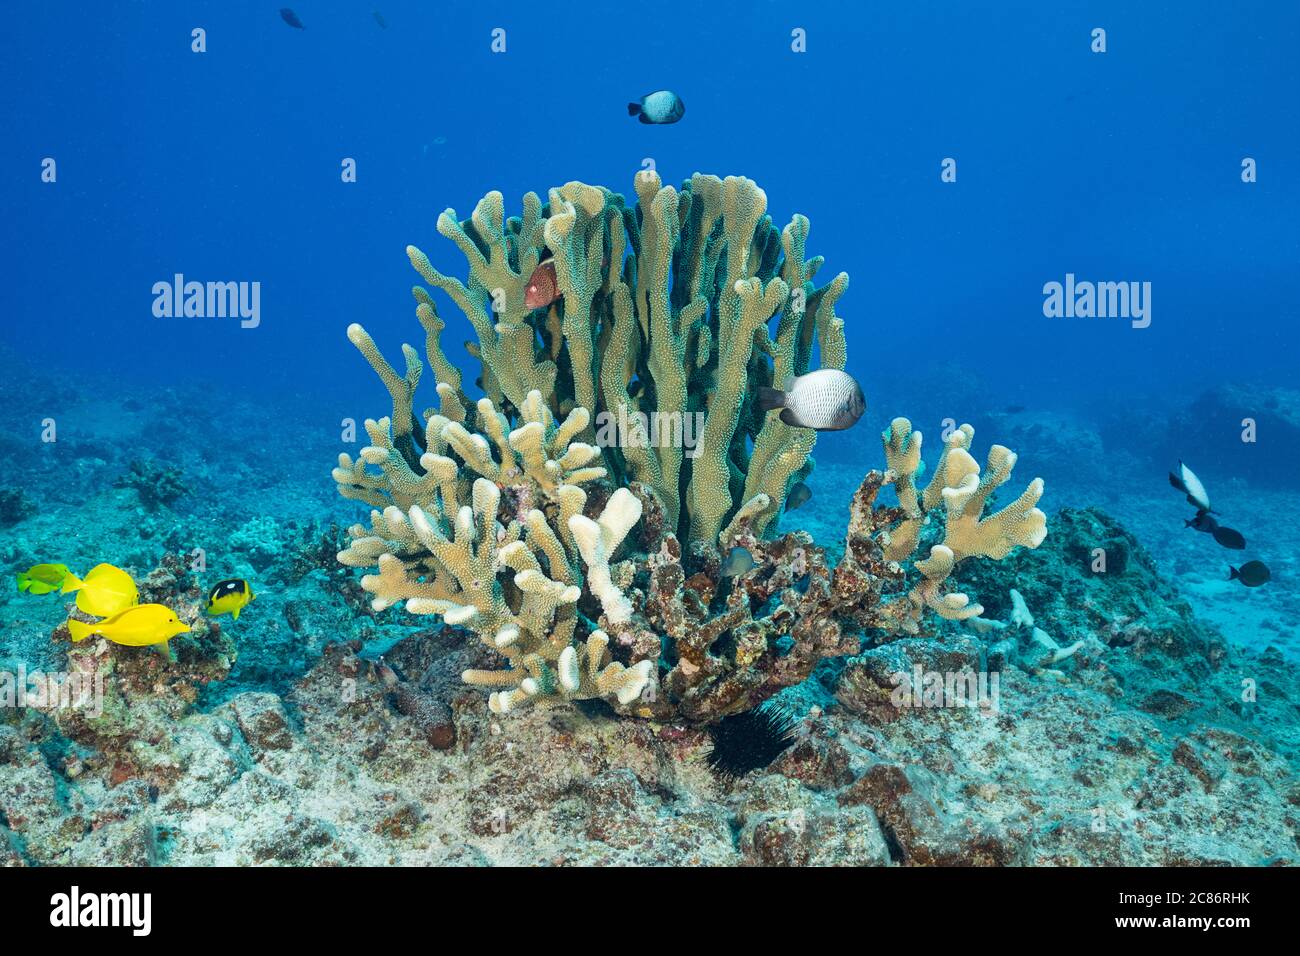 Un poisson-baucon de côté noir se confond entre la partie saine des branches d'un corail anteur montrant 4 étapes de blanchiment et de mort, Kona, Hawaii Banque D'Images